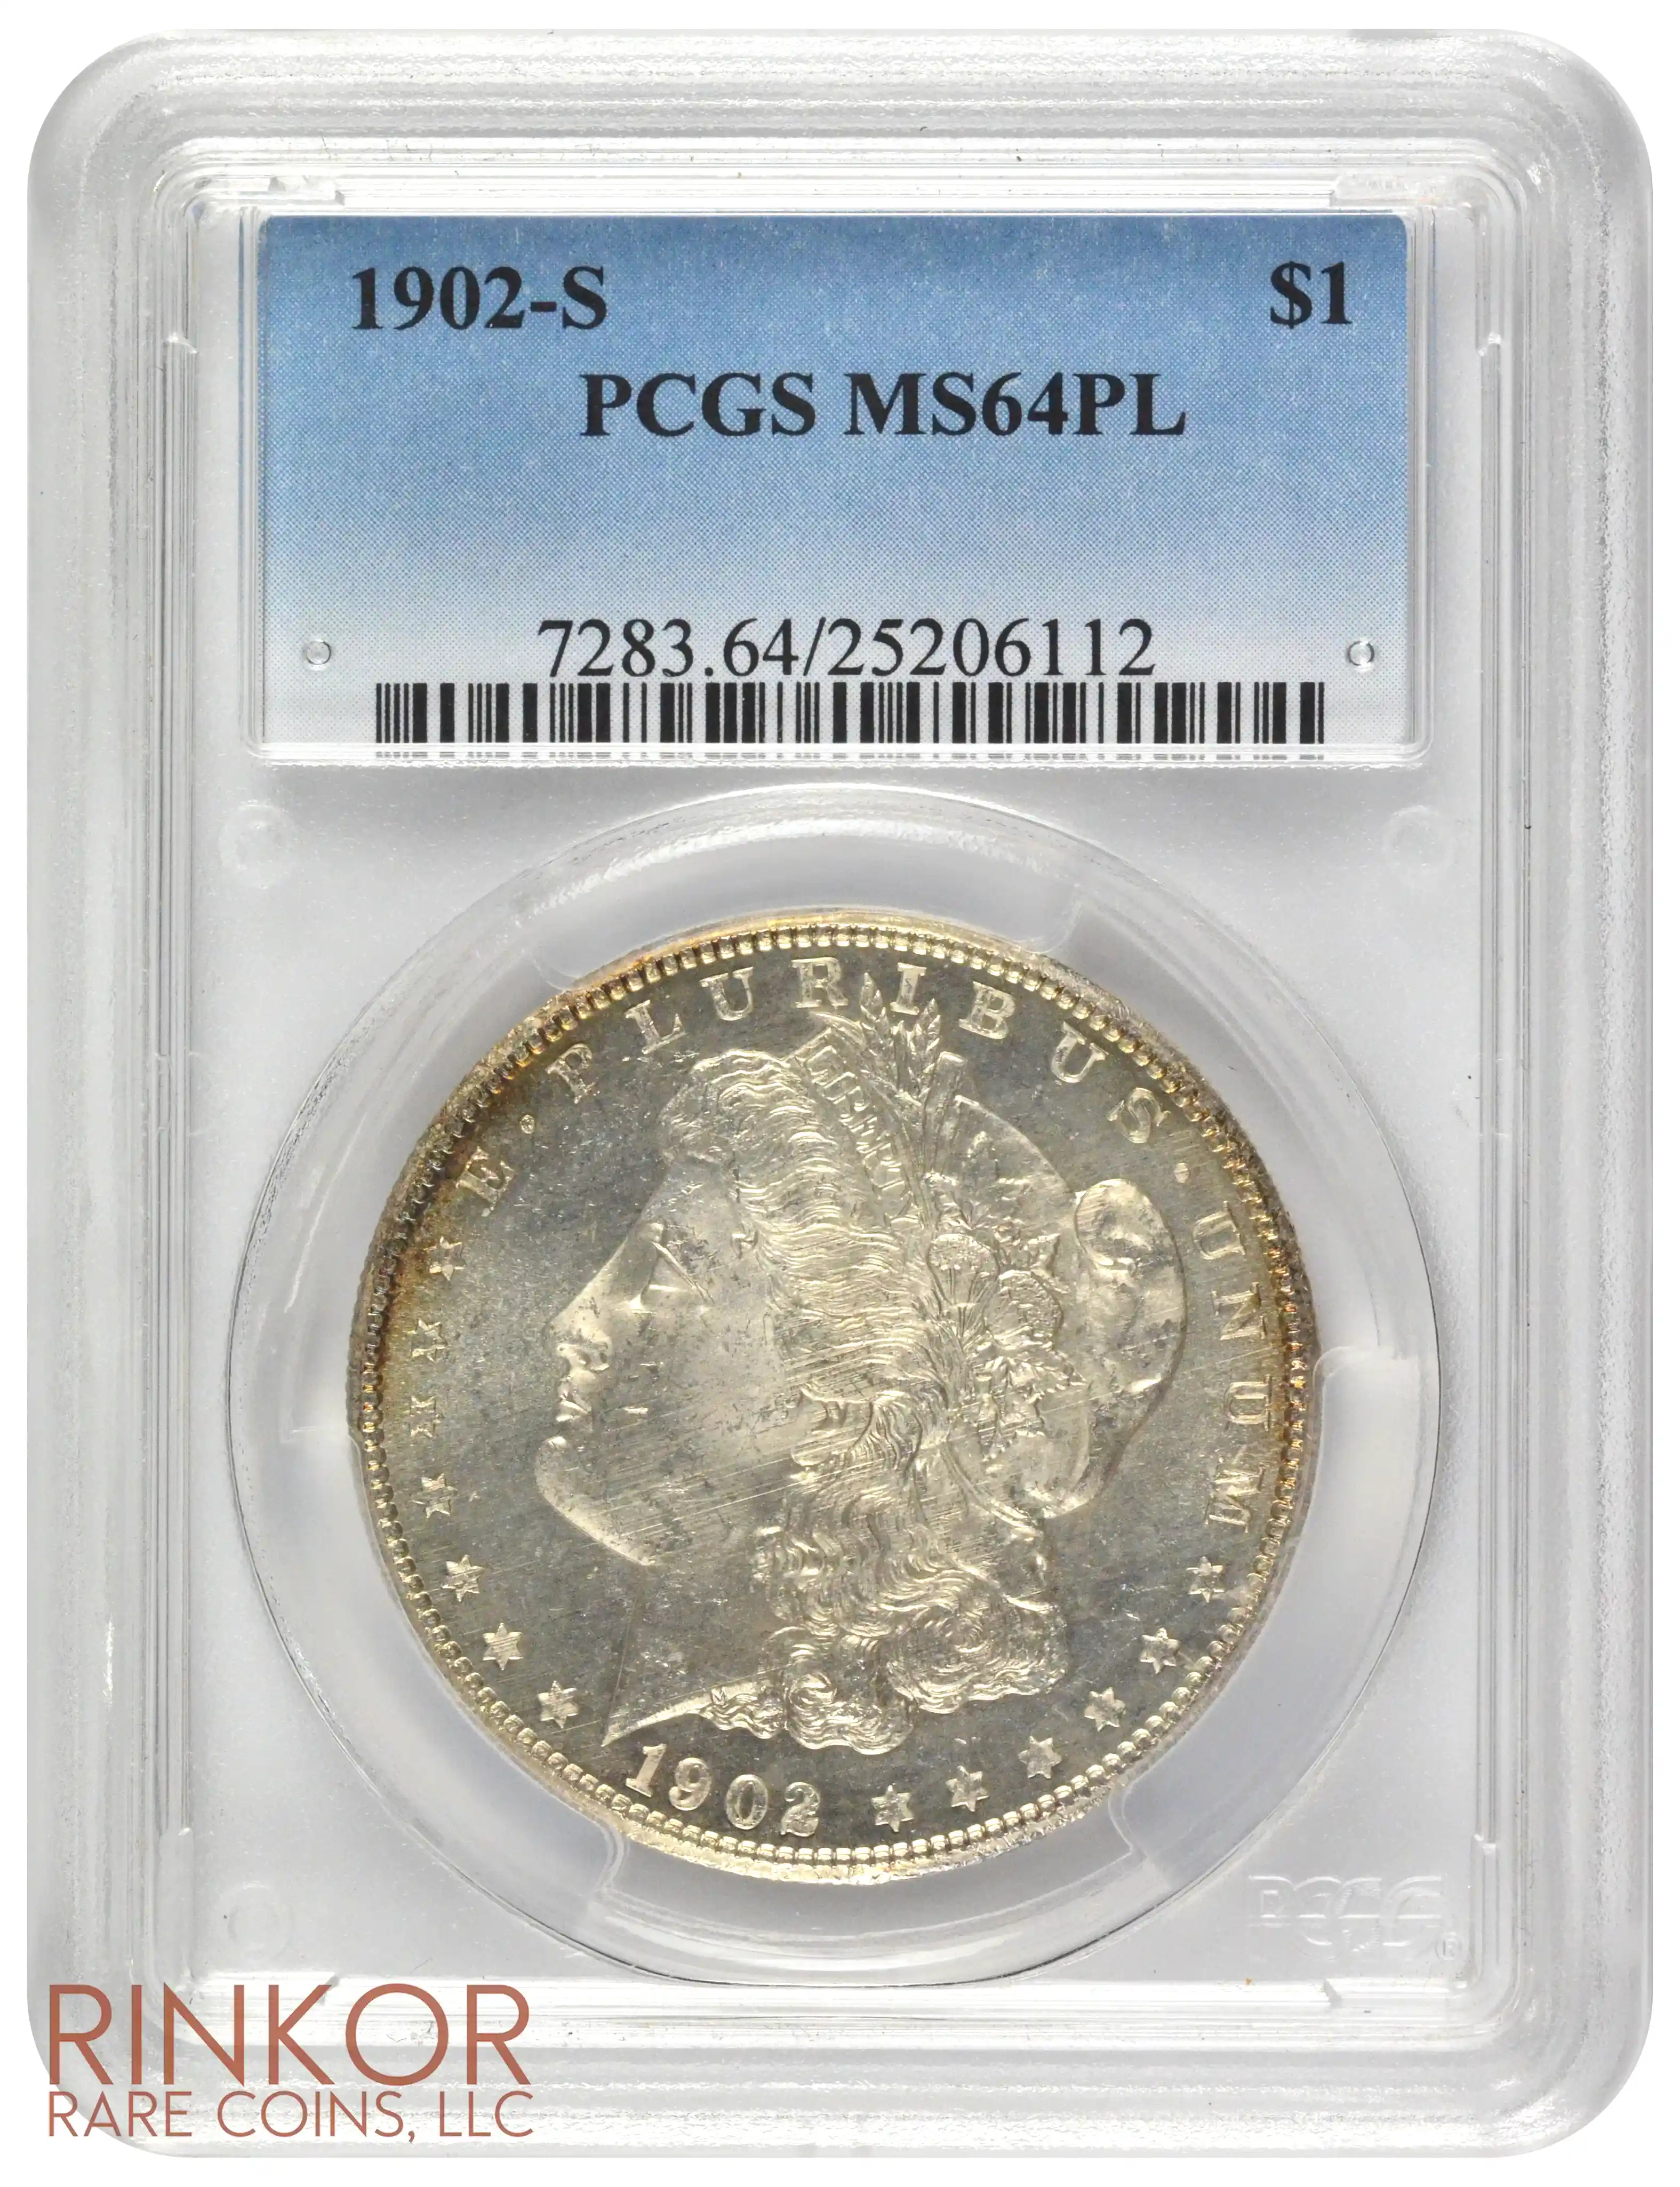 1902-S $1 PCGS MS 64 PL